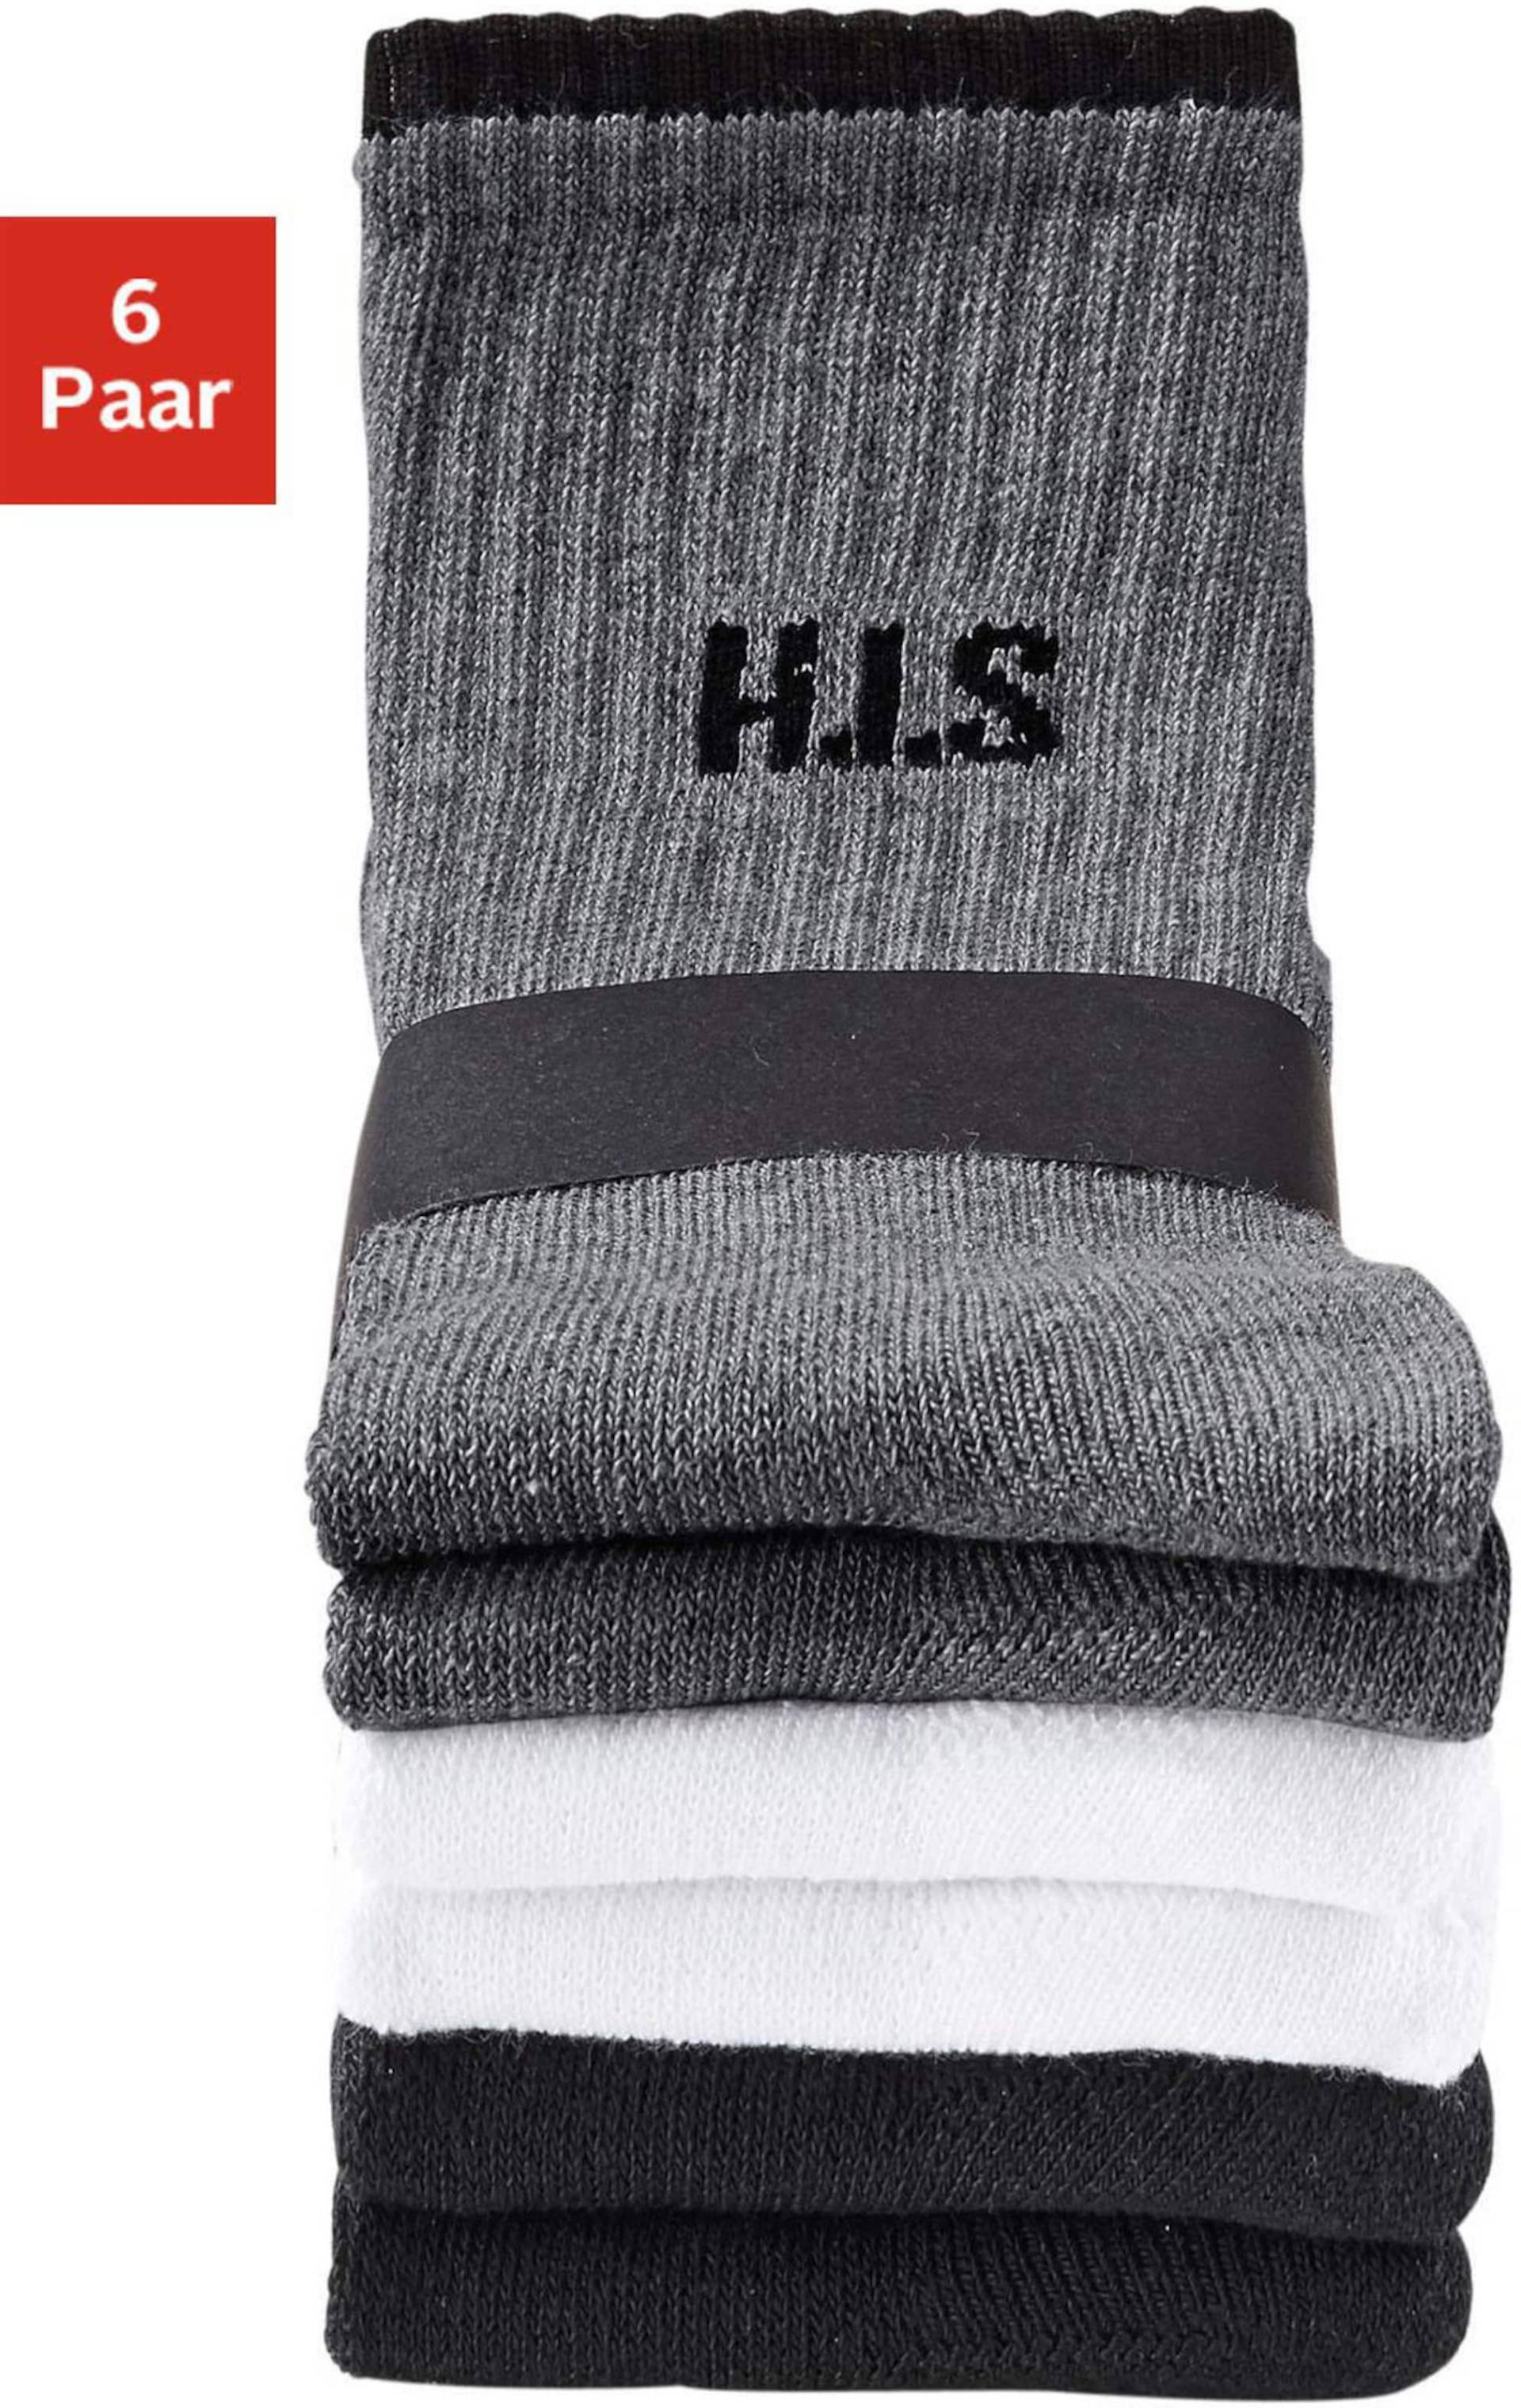 Sportsocken in 2x weiß, 2x schwarz, 2x grau meliert von H.I.S von H.I.S